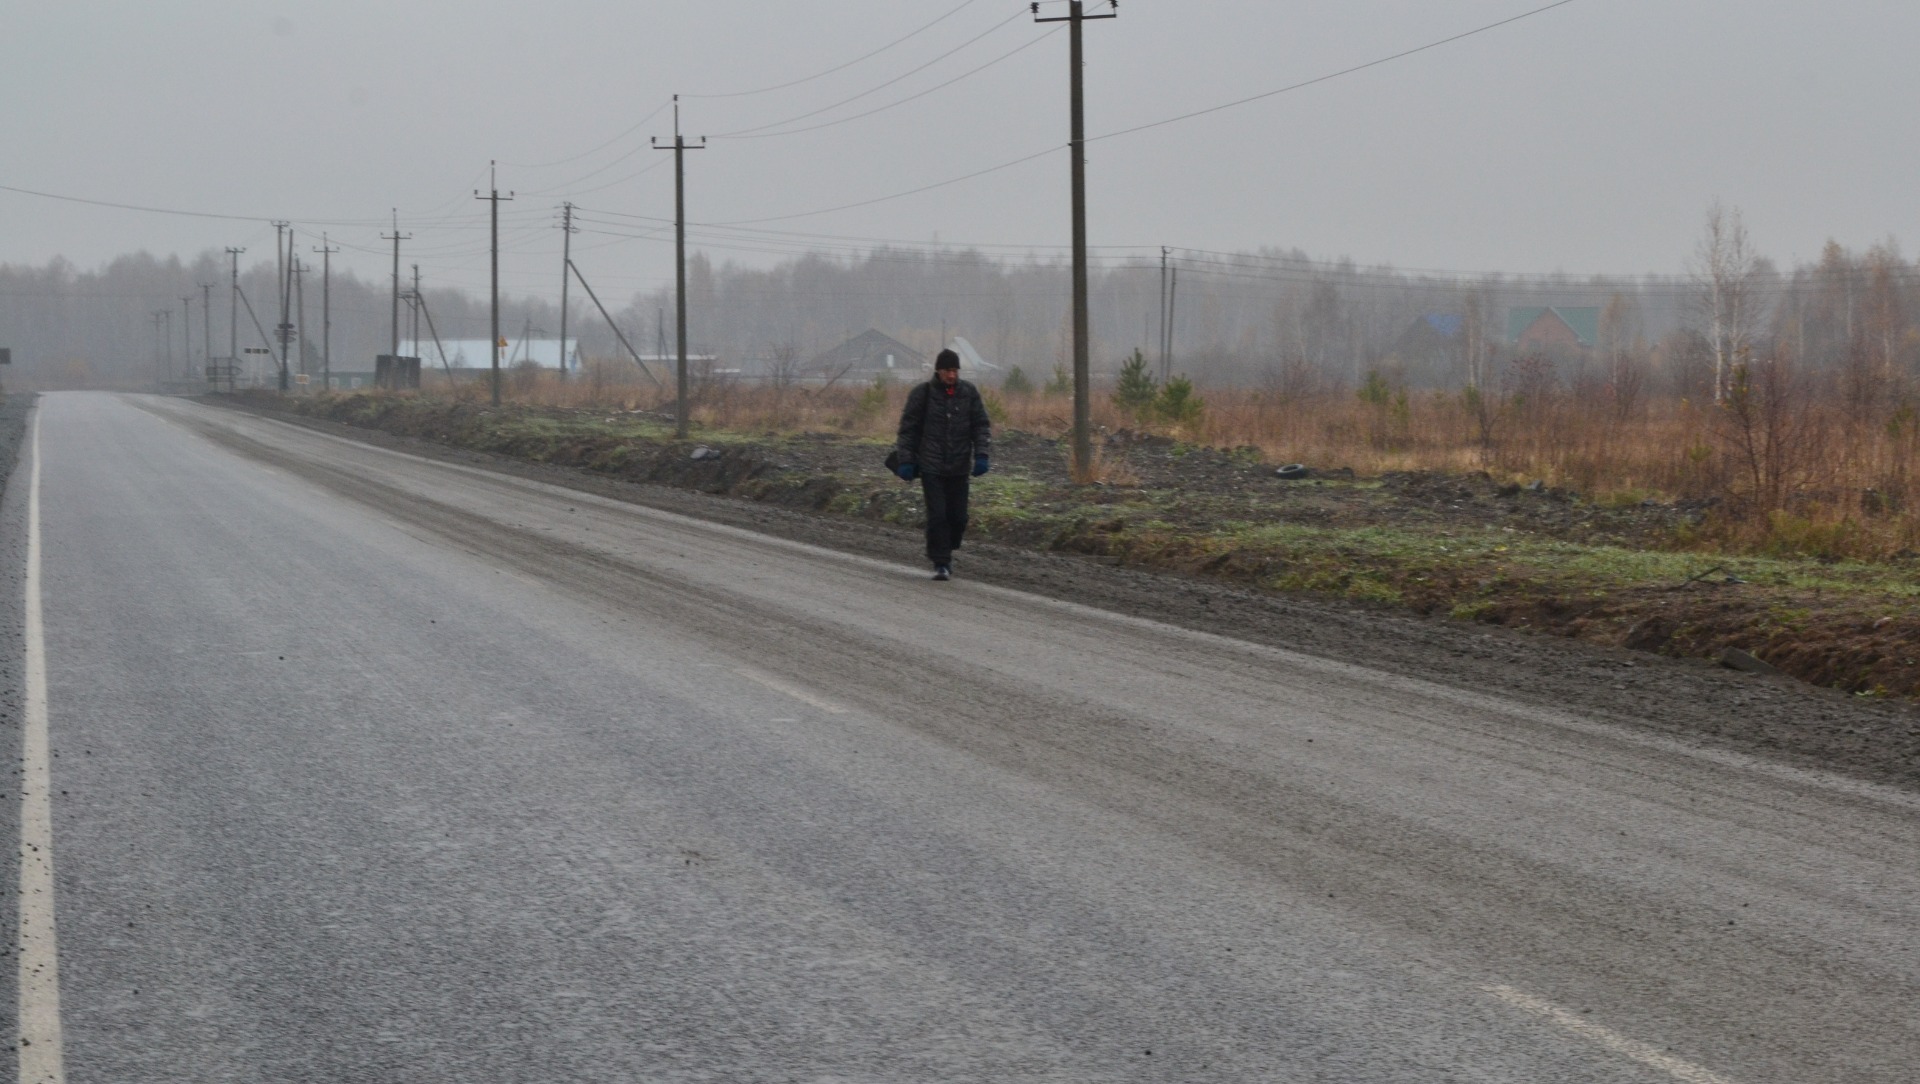 Вахтовик из Коми пошел пешком до Перми — это 11 дней пути. В чем причина поступка